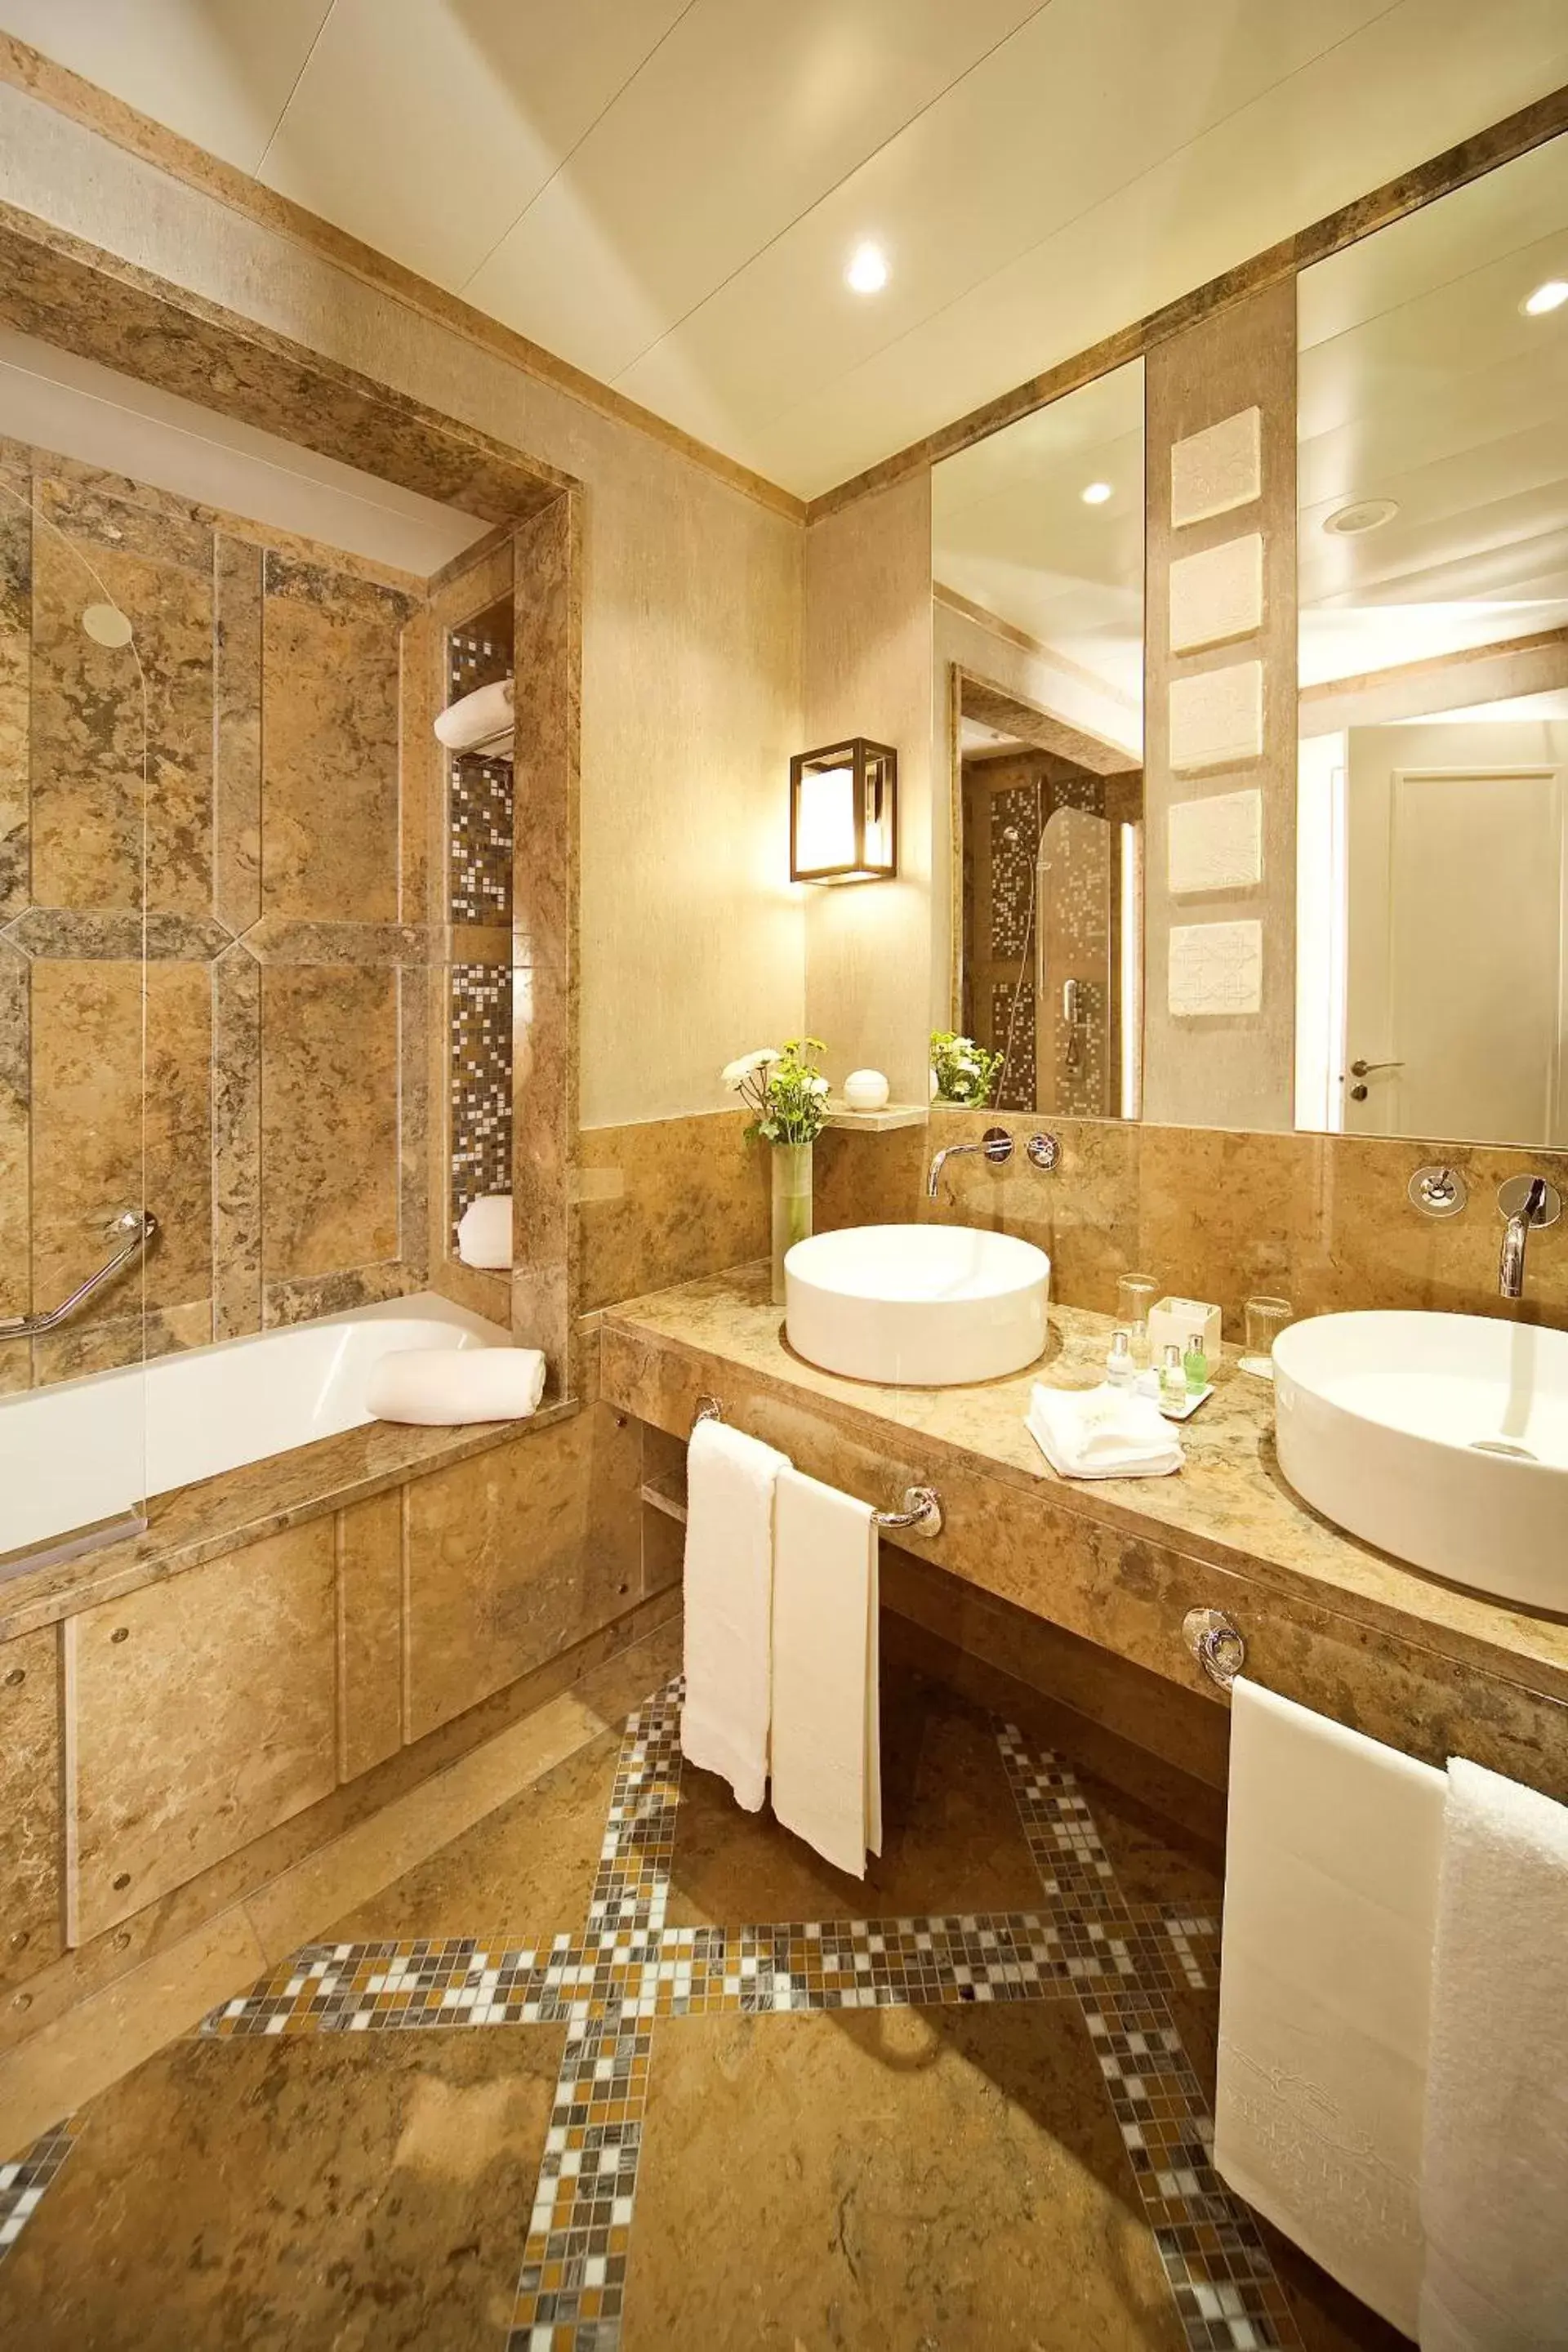 Bathroom in Grande Real Villa Itália Hotel & Spa